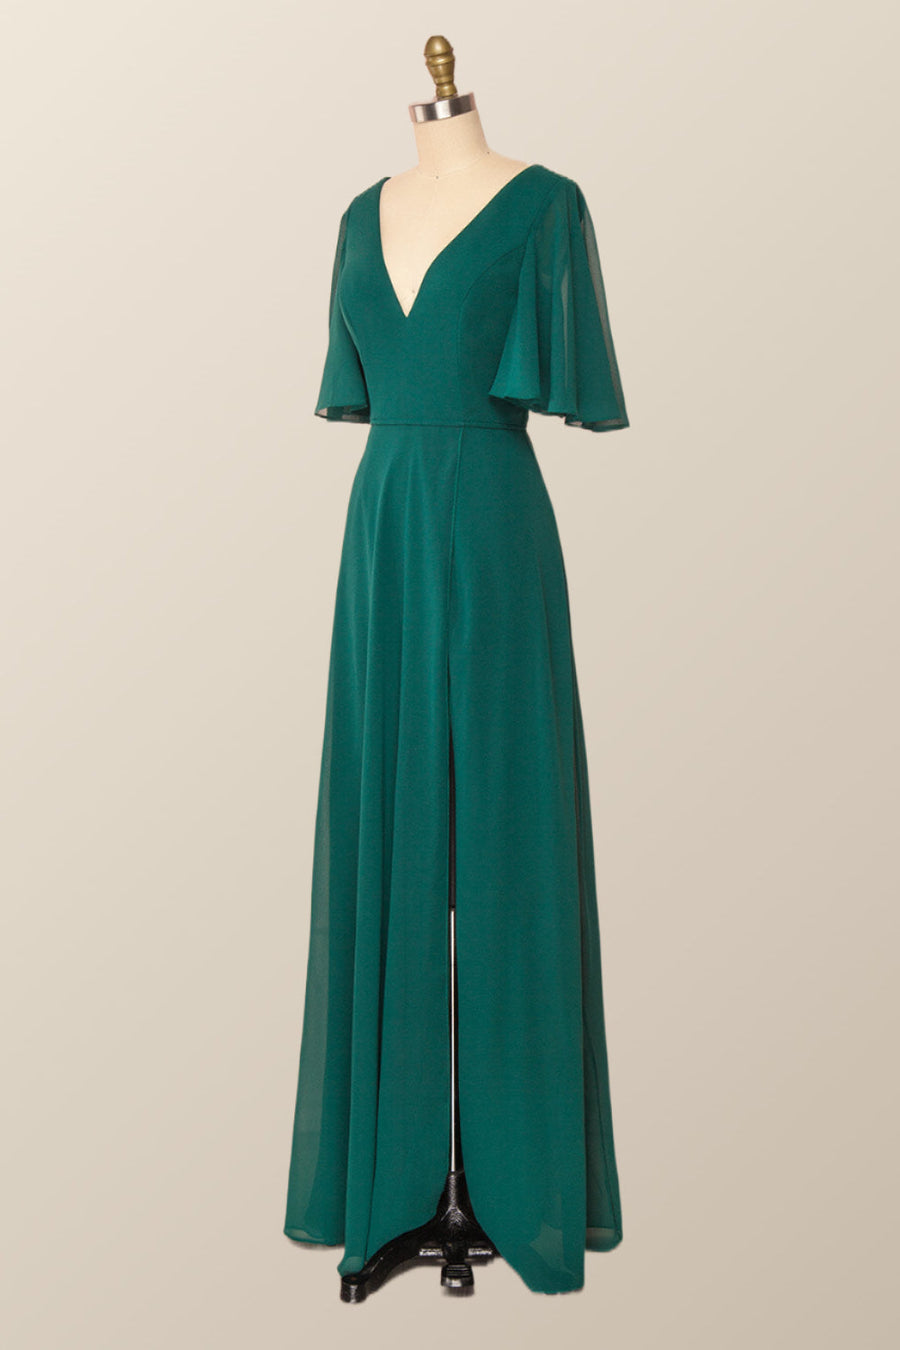 Flare Sleeves Green Chiffon Long Bridesmaid Dress